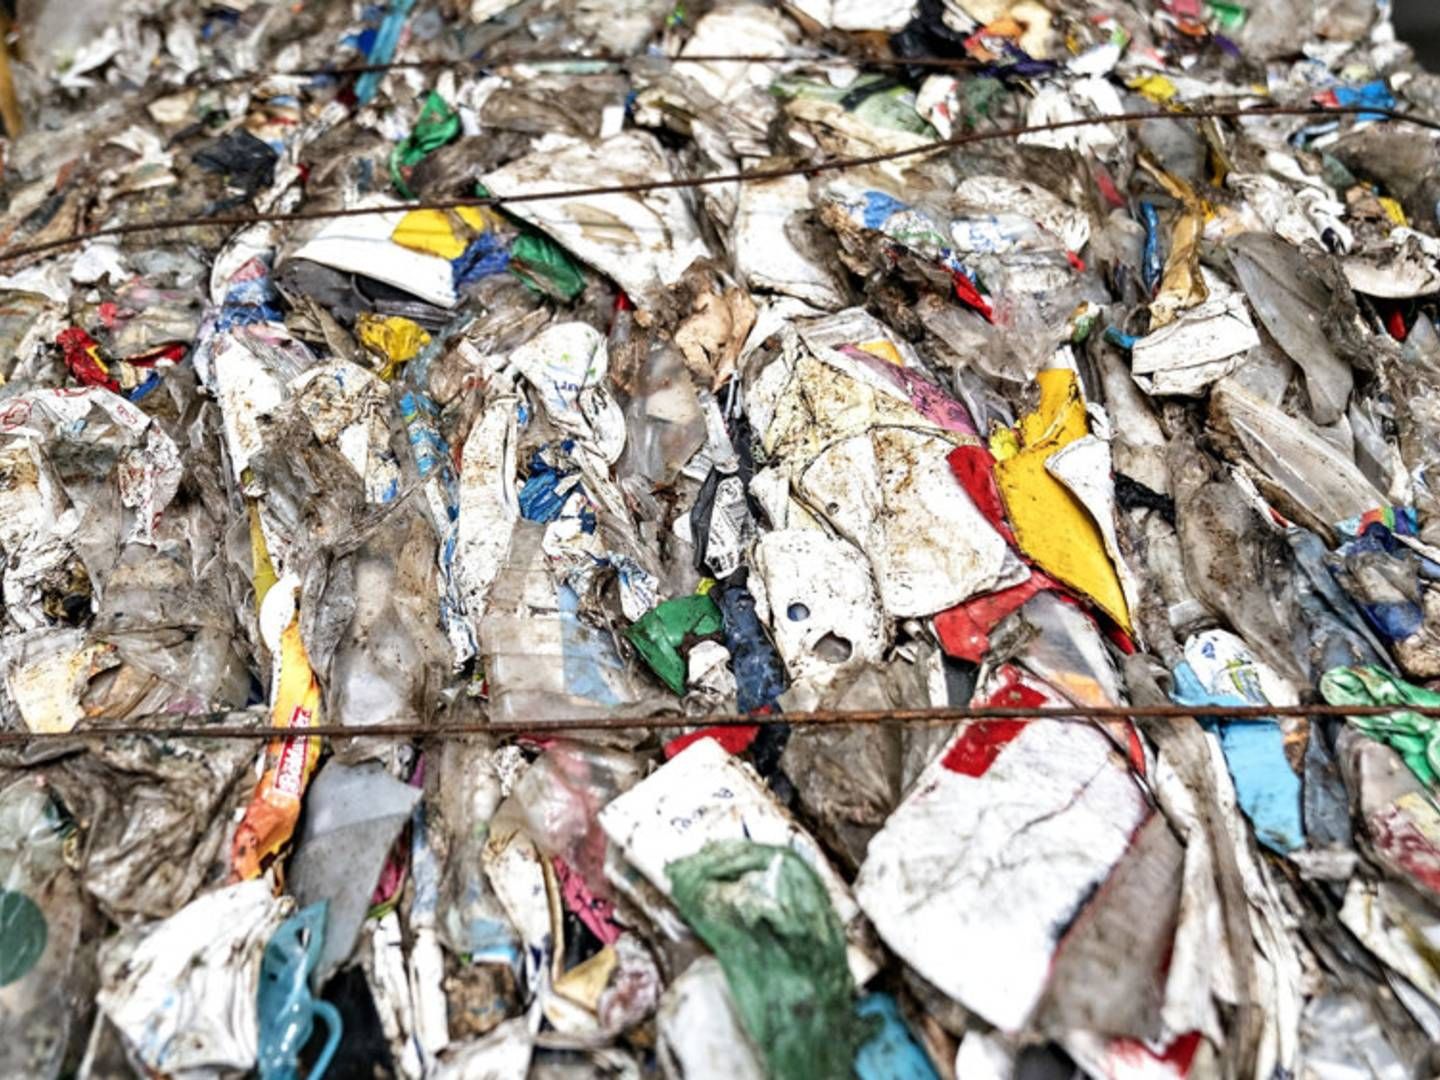 Genanvendeligt dansk affald må ikke ende på lossepladser i eksempelvis Malaysia og Indonesien. Derfor skal tilsyn med eksport og import af affald styrkes, siger miljøminister Lea Wermelin (S). | Foto: Henning Bagger/Ritzau Scanpix